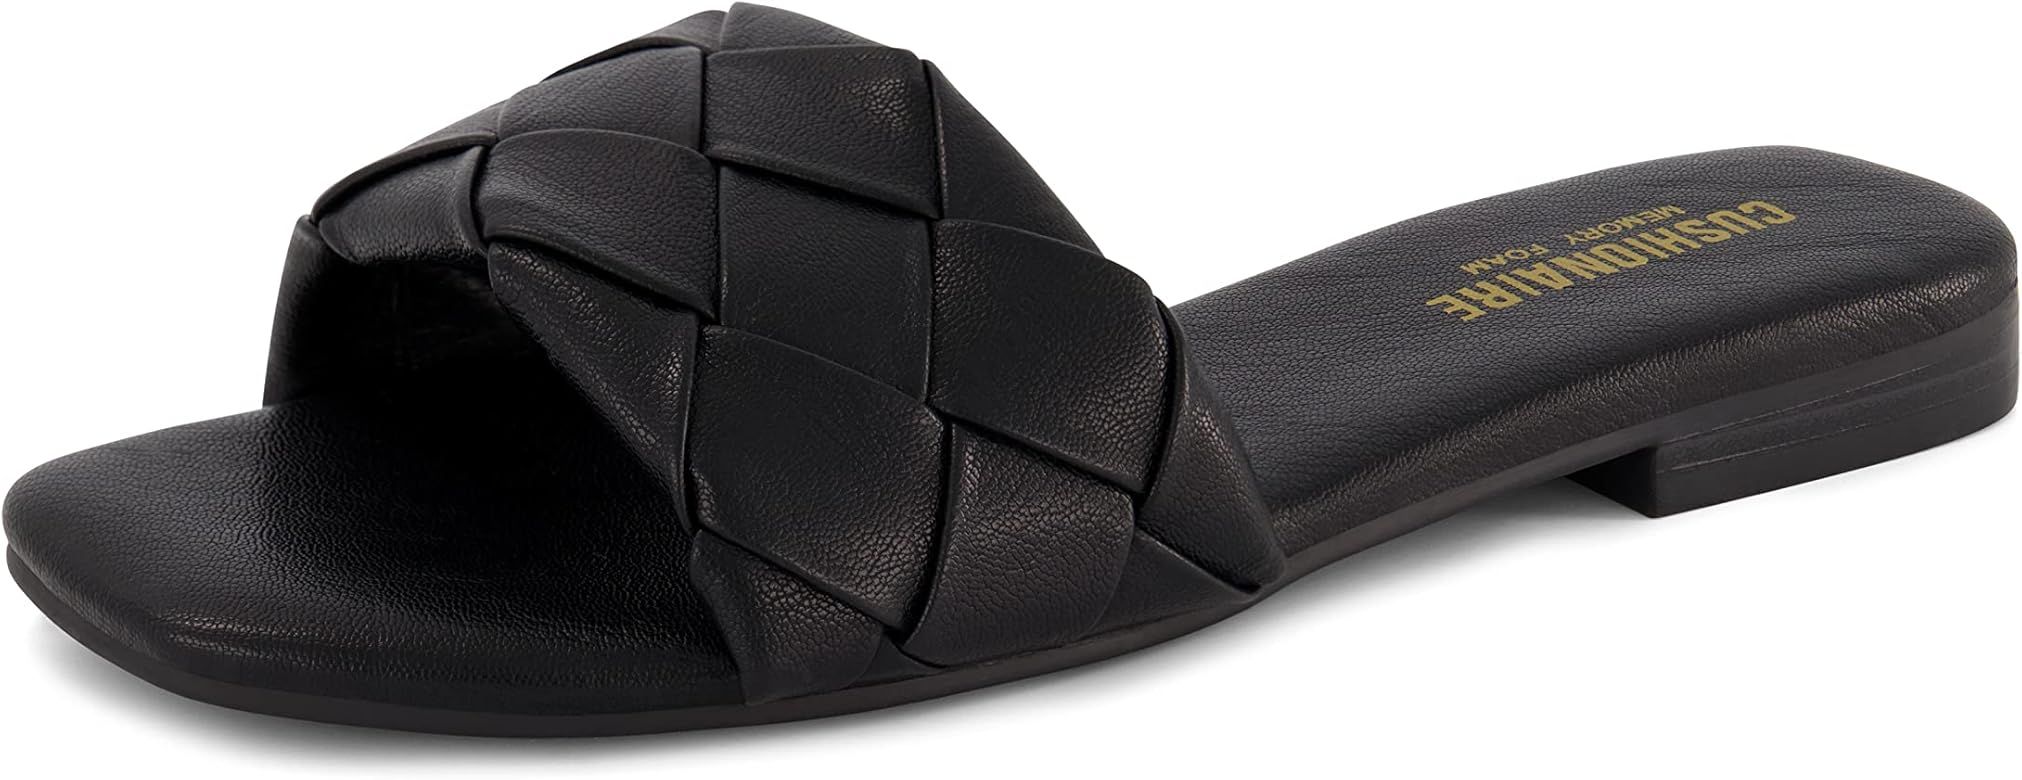 Women's Franca woven slide sandal +Memory Foam, Wide Widths Available | Amazon (US)